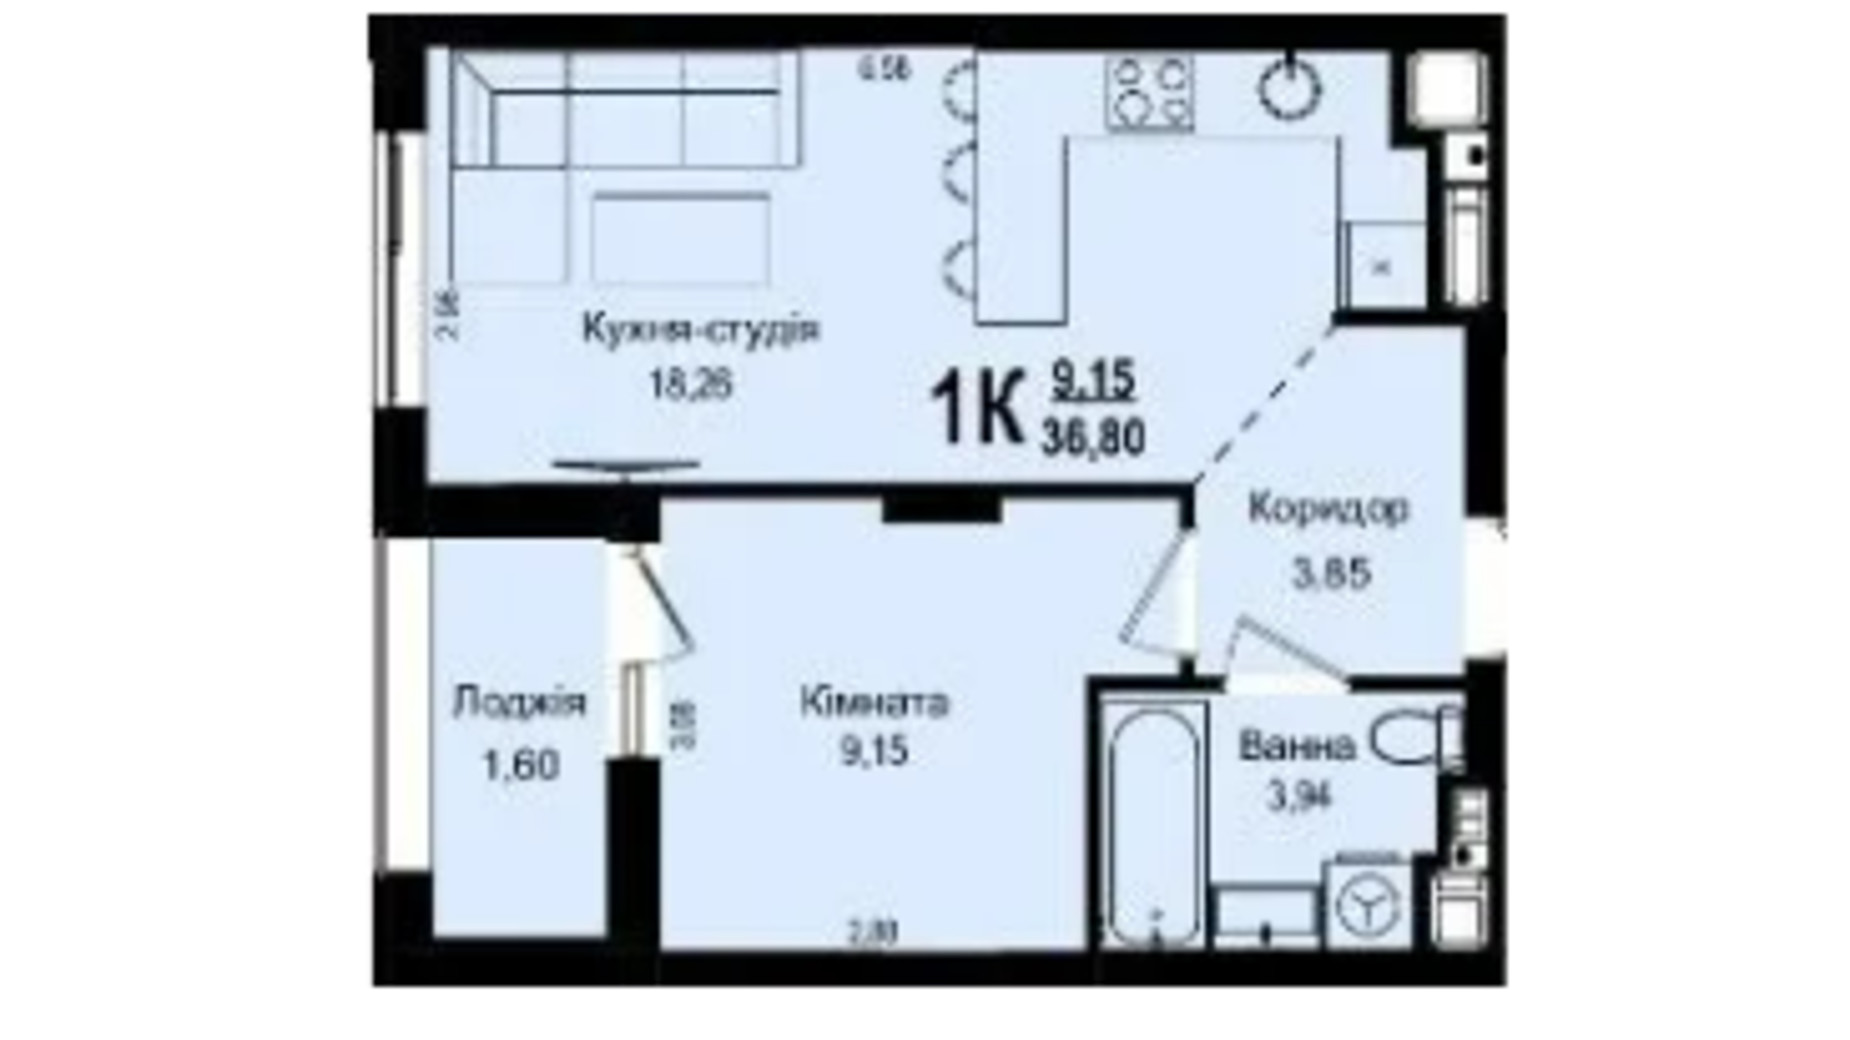 Планировка 1-комнатной квартиры в ЖК Roksolana 36.8 м², фото 669265